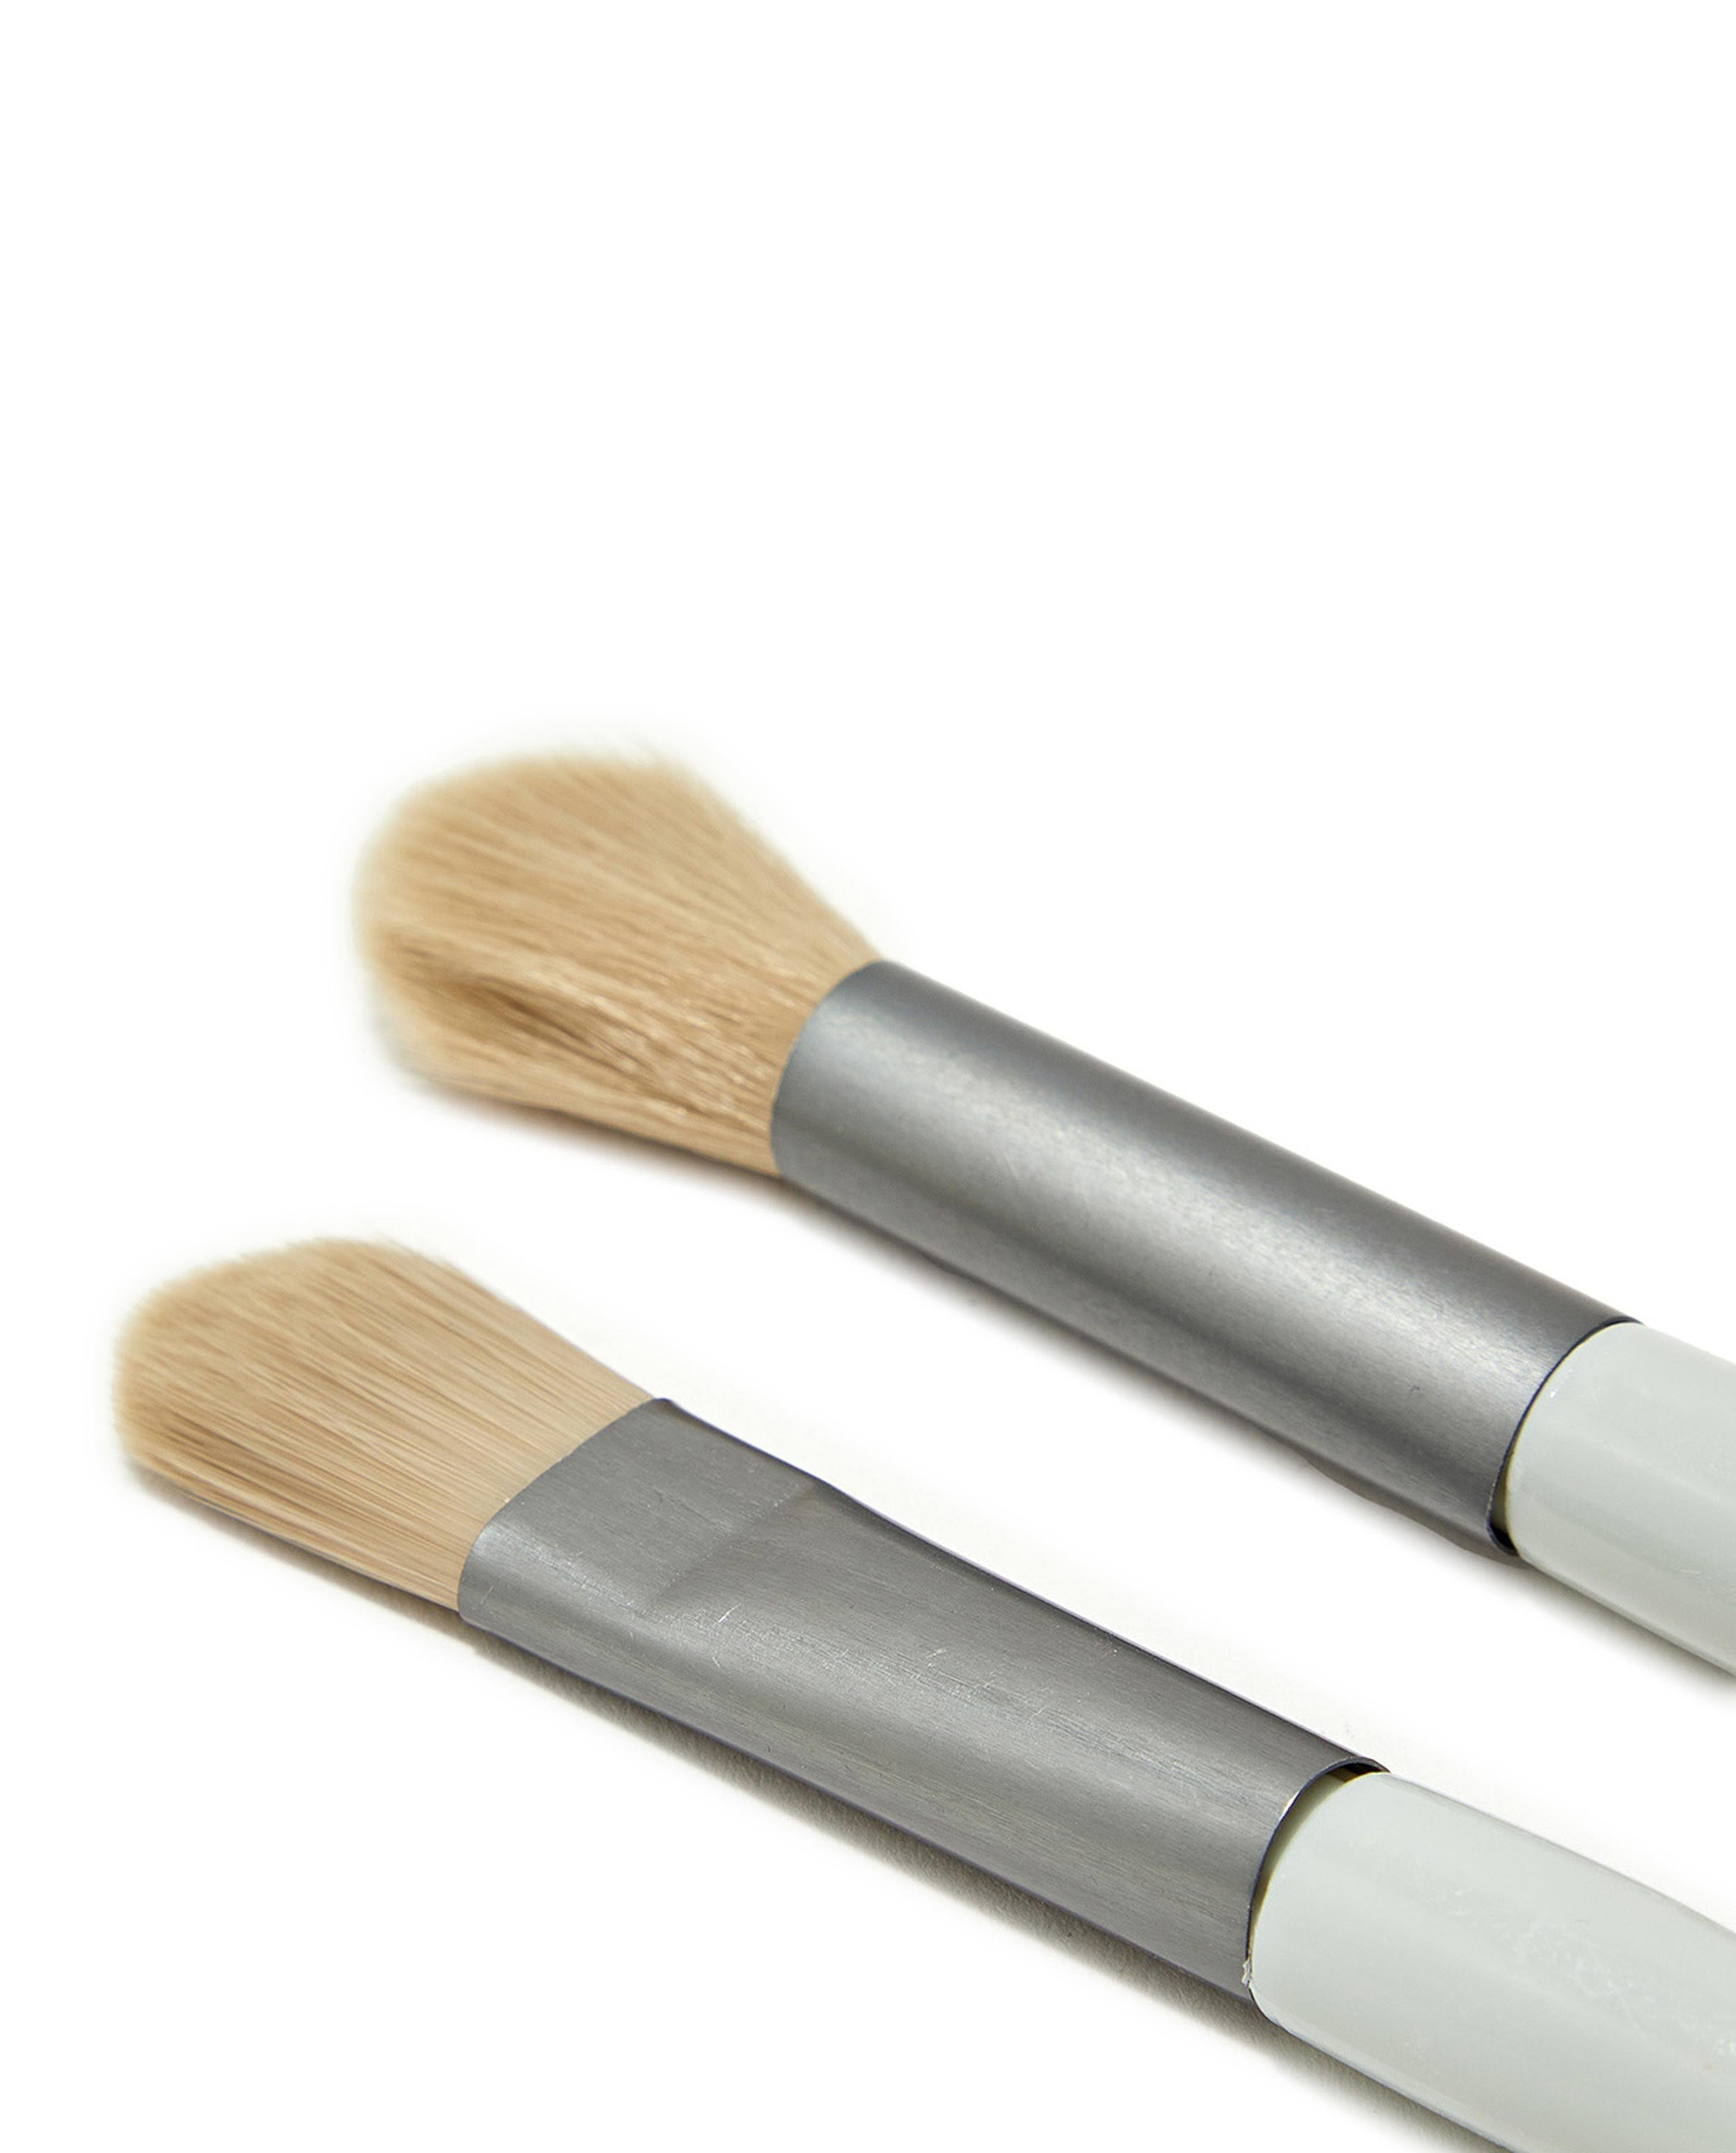 8 Piece Makeup Brush Set